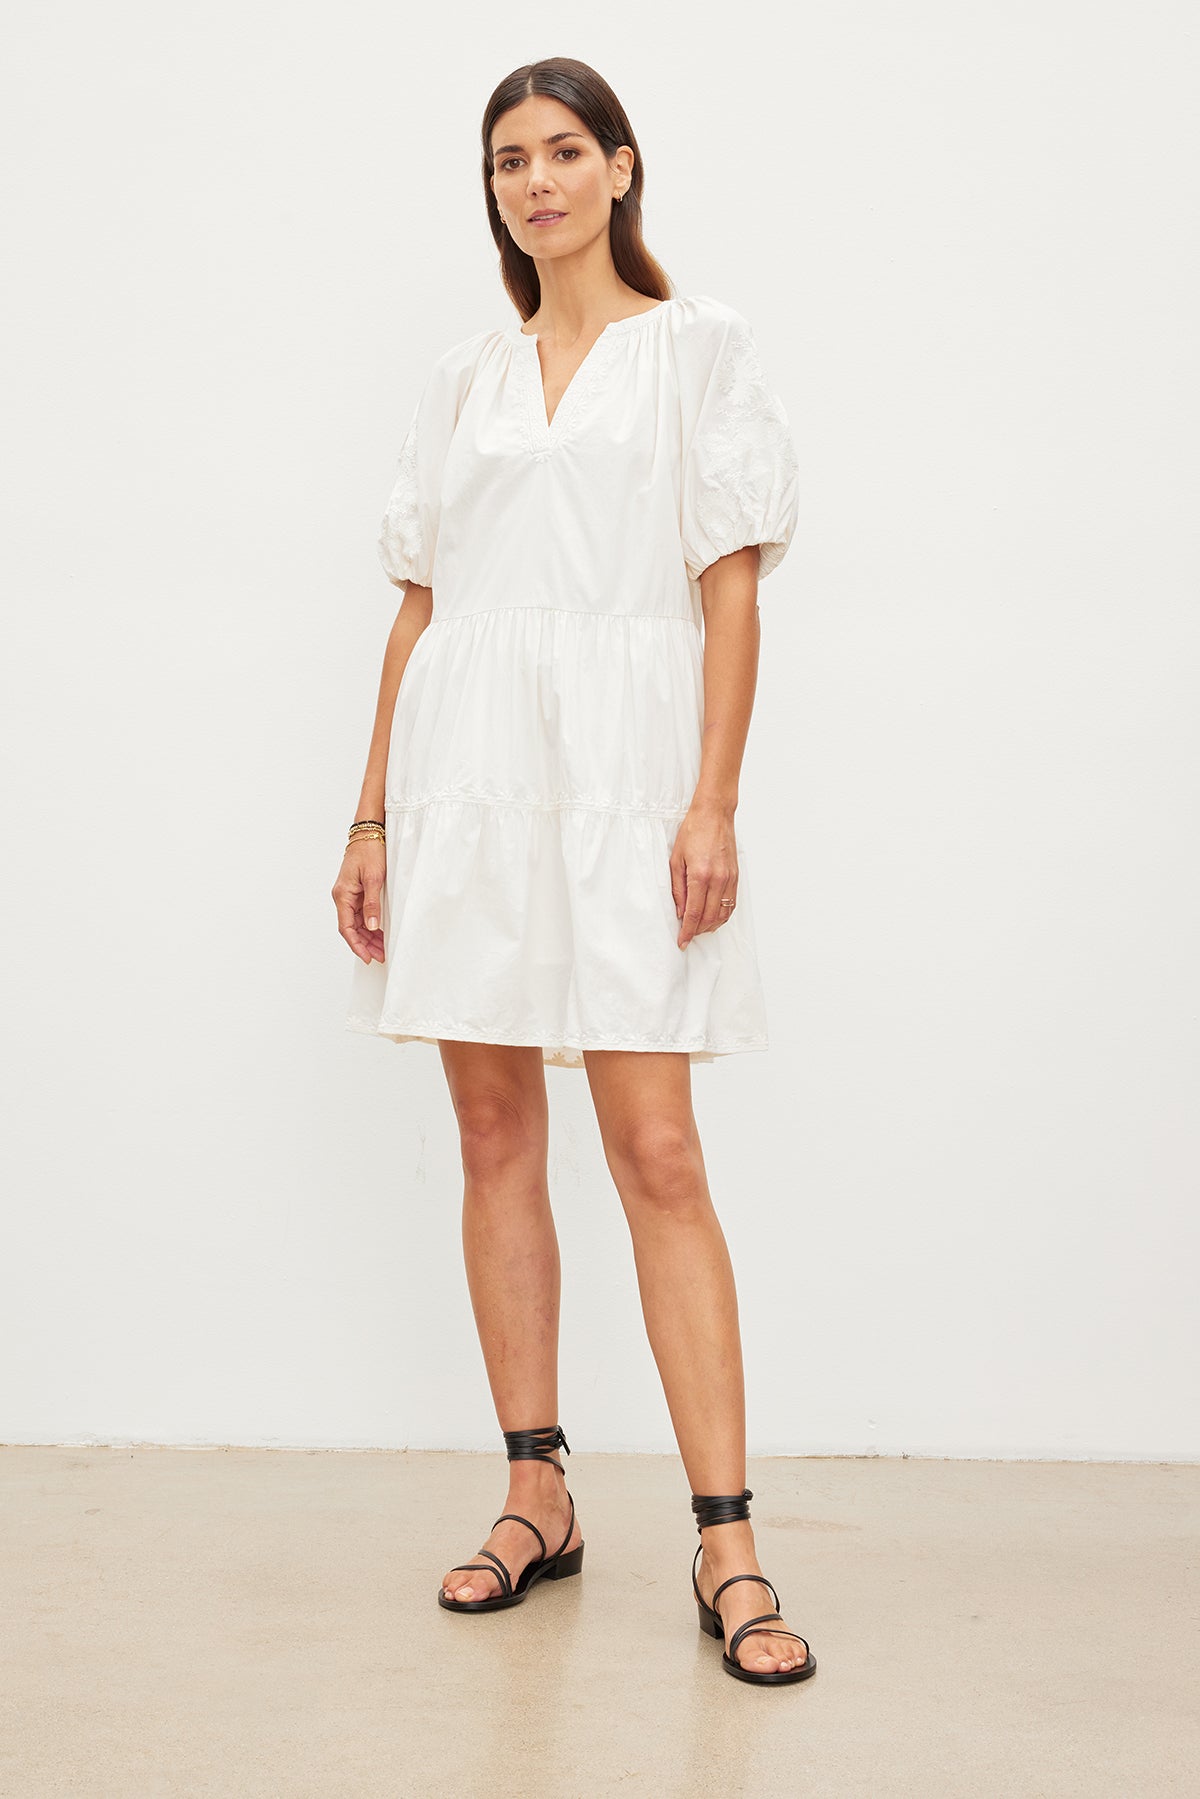 Velvet by Graham & Spencer CHRISSY EMBROIDERED BOHO DRESS with white puff sleeve mini dress and v-neckline.-35955557564609